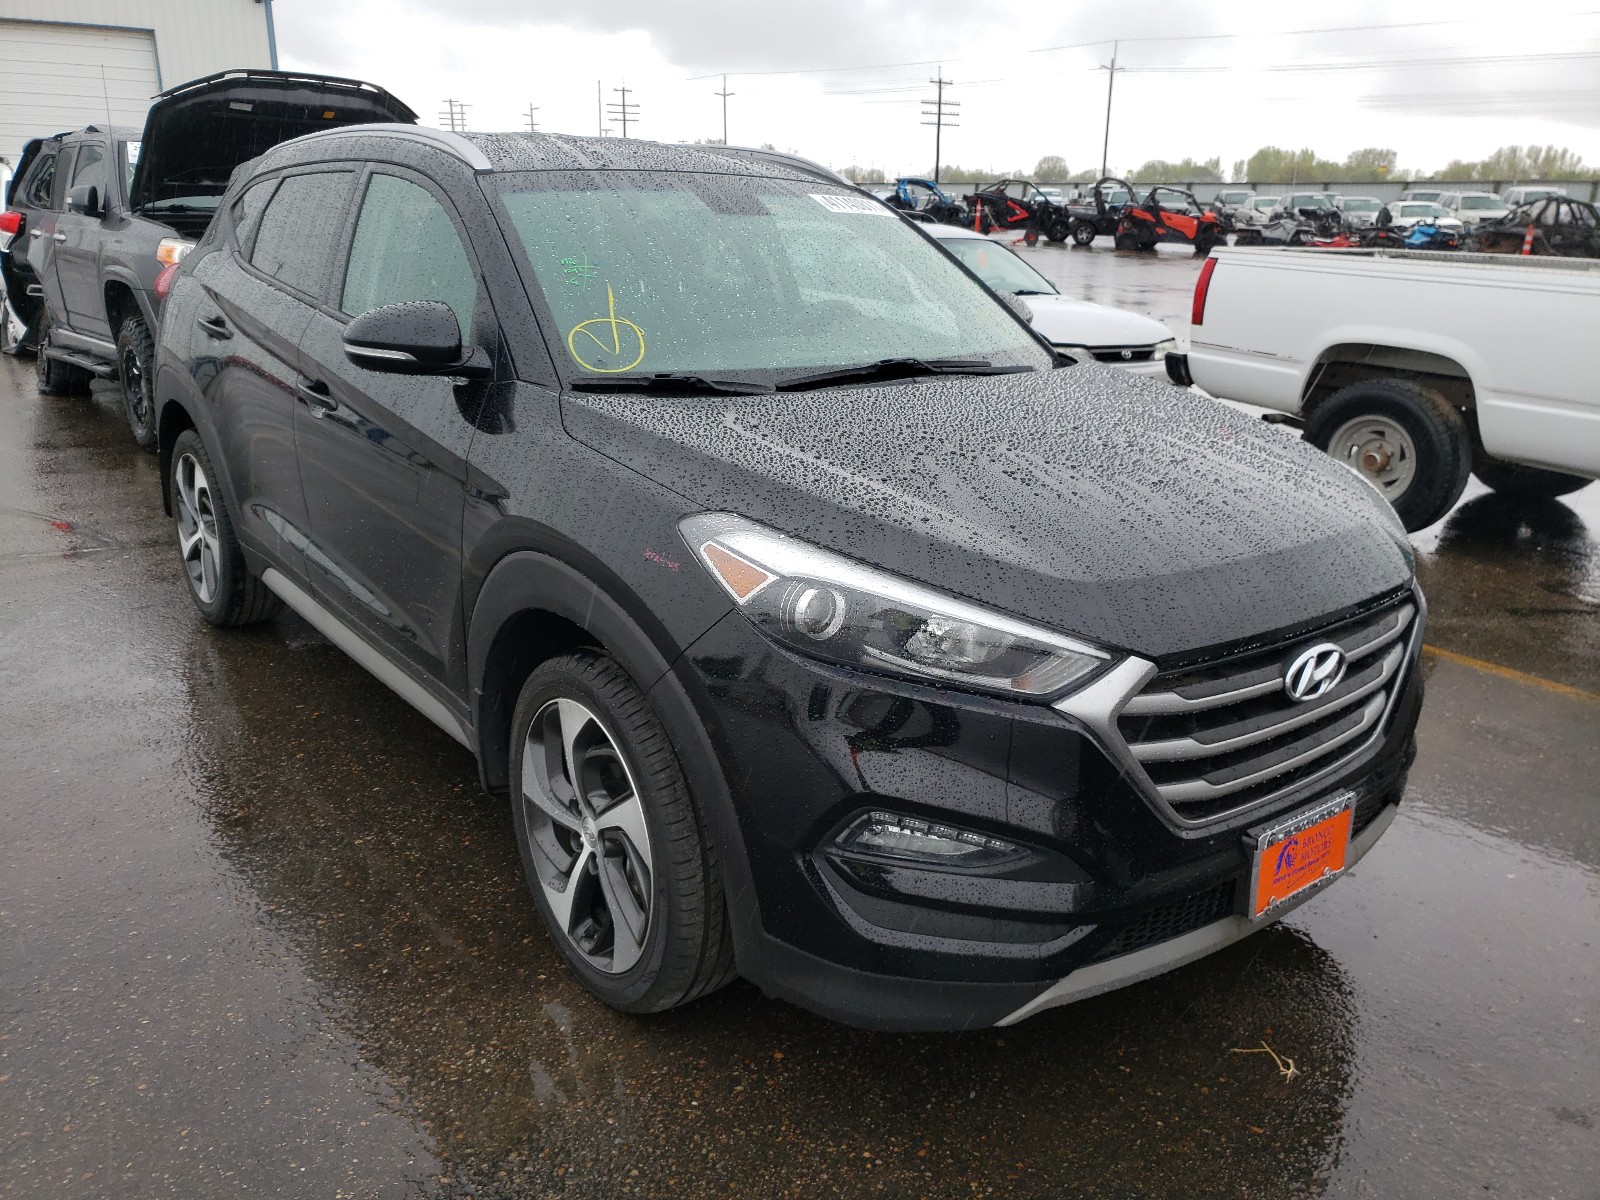 Hyundai Tucson spo 2018